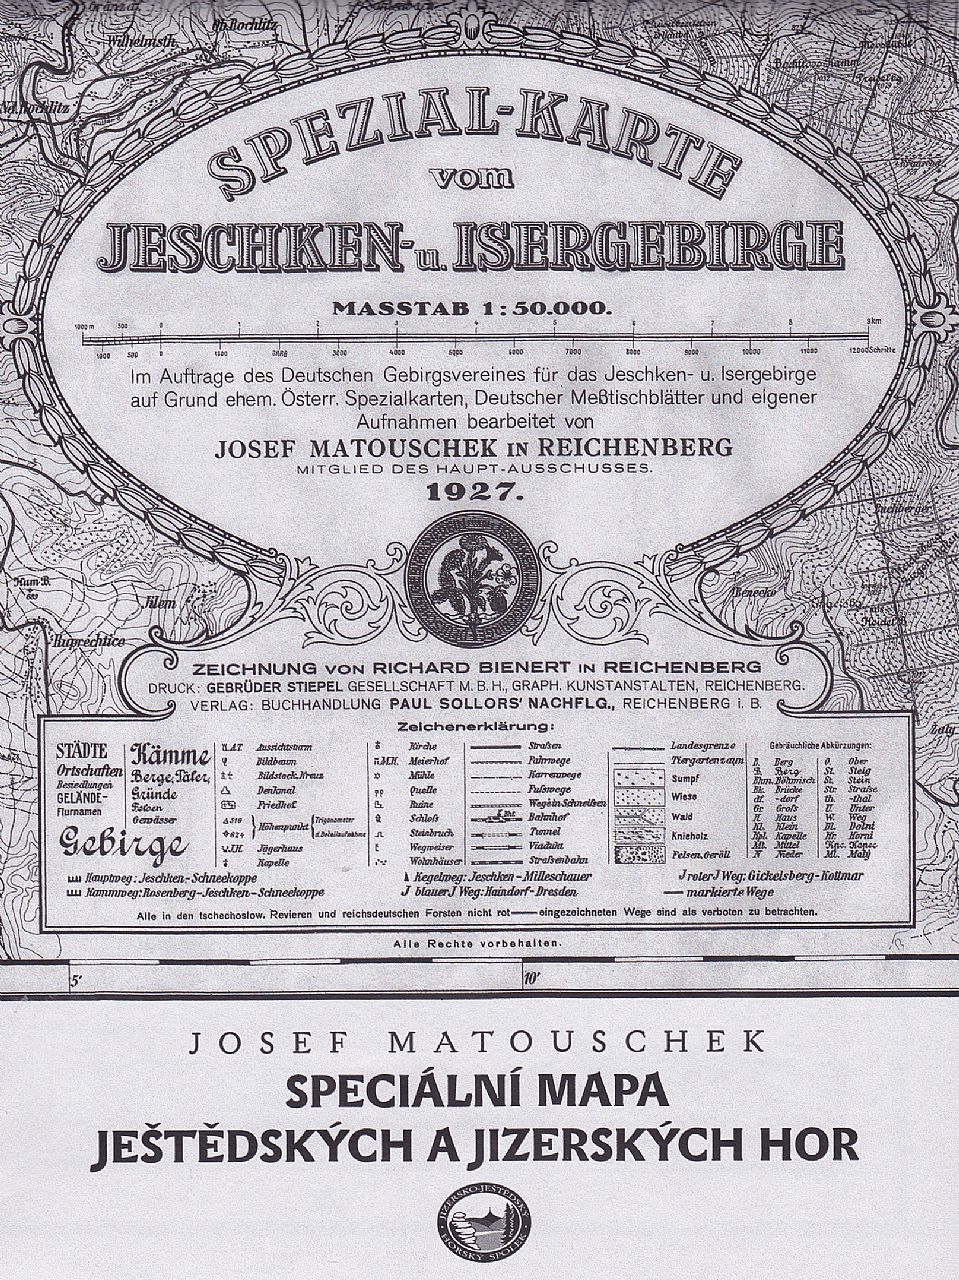 Speciální mapa Ještědských a Jizerských hor (tzv. Matouschkova mapa z roku 1927) - reprint